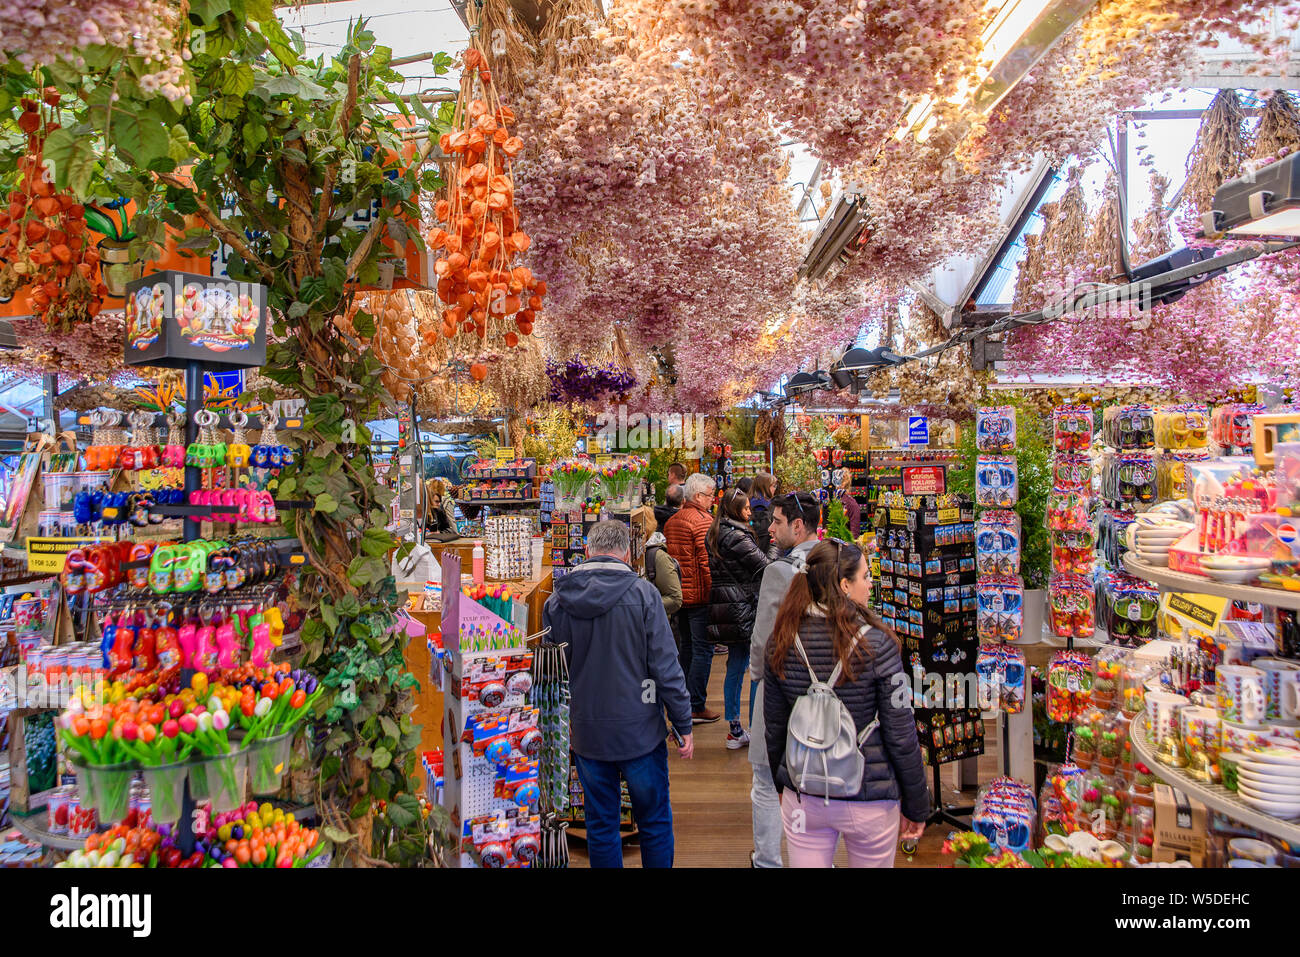 Bloemenmarkt, il mercato dei fiori galleggiante di Amsterdam, Paesi Bassi Foto Stock